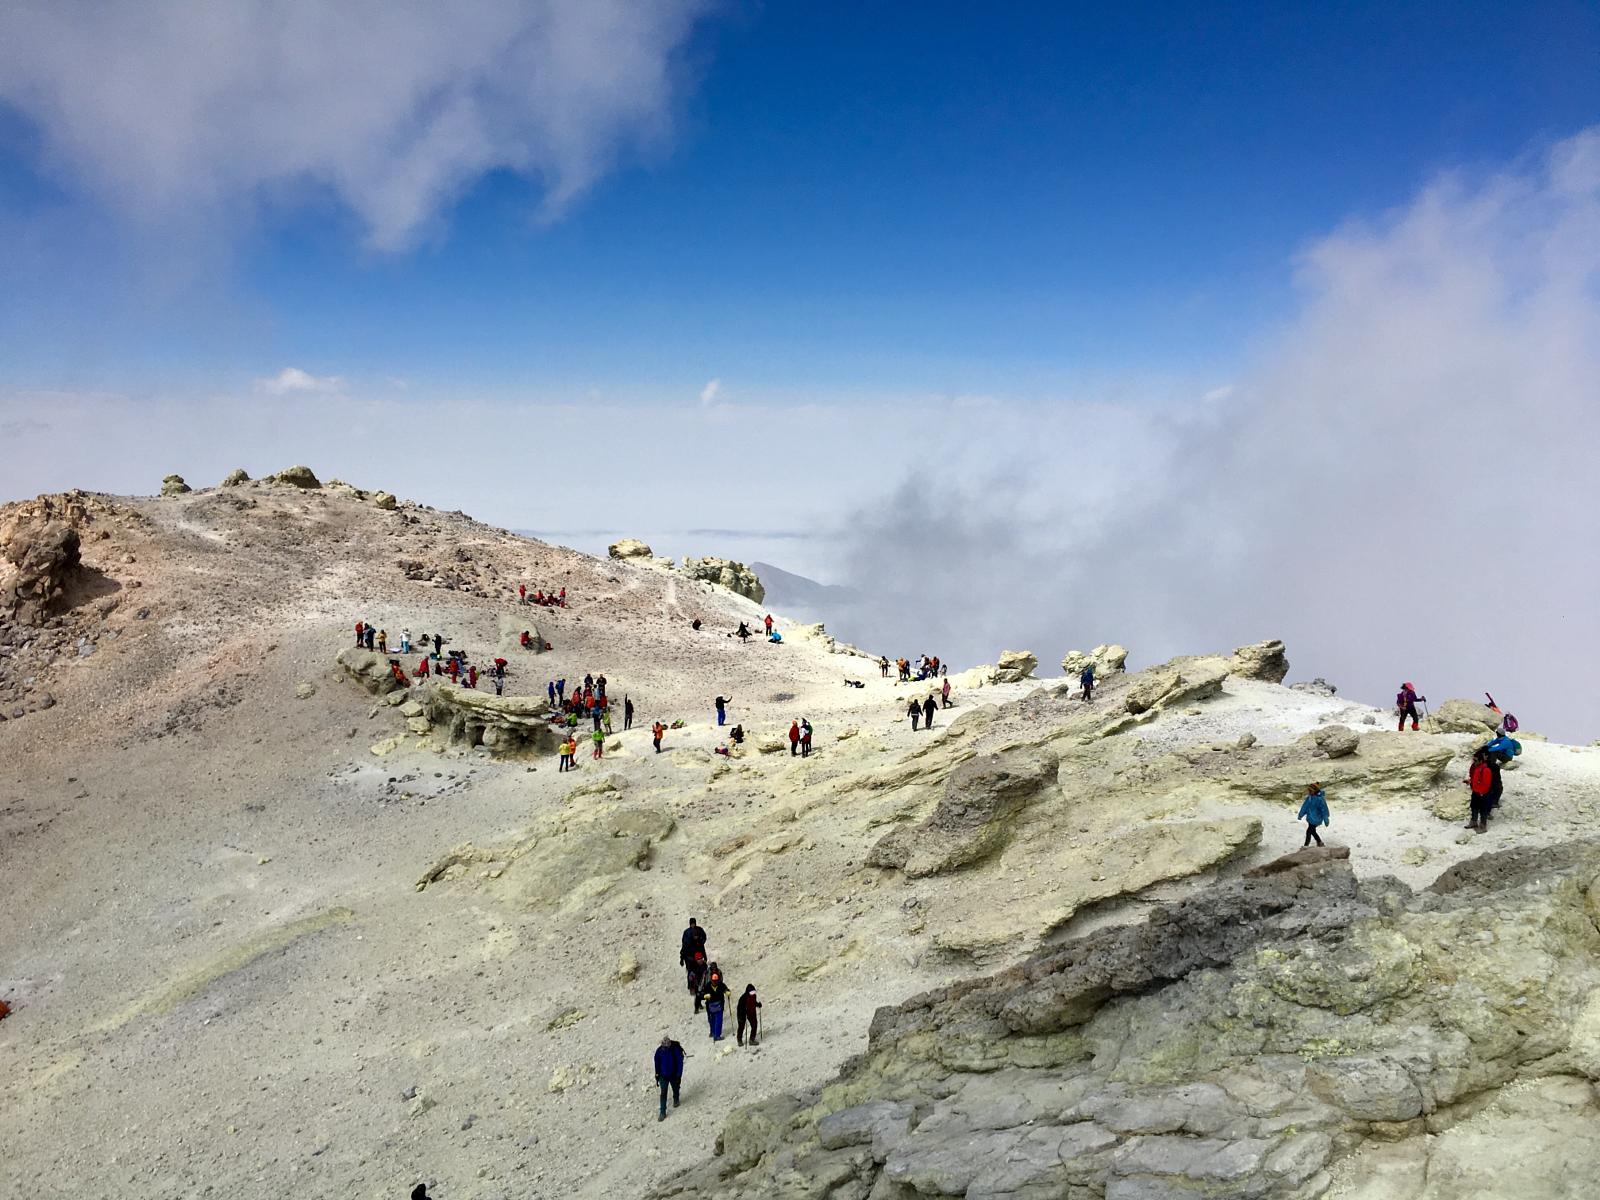 قله دماوند, Damavand Peak